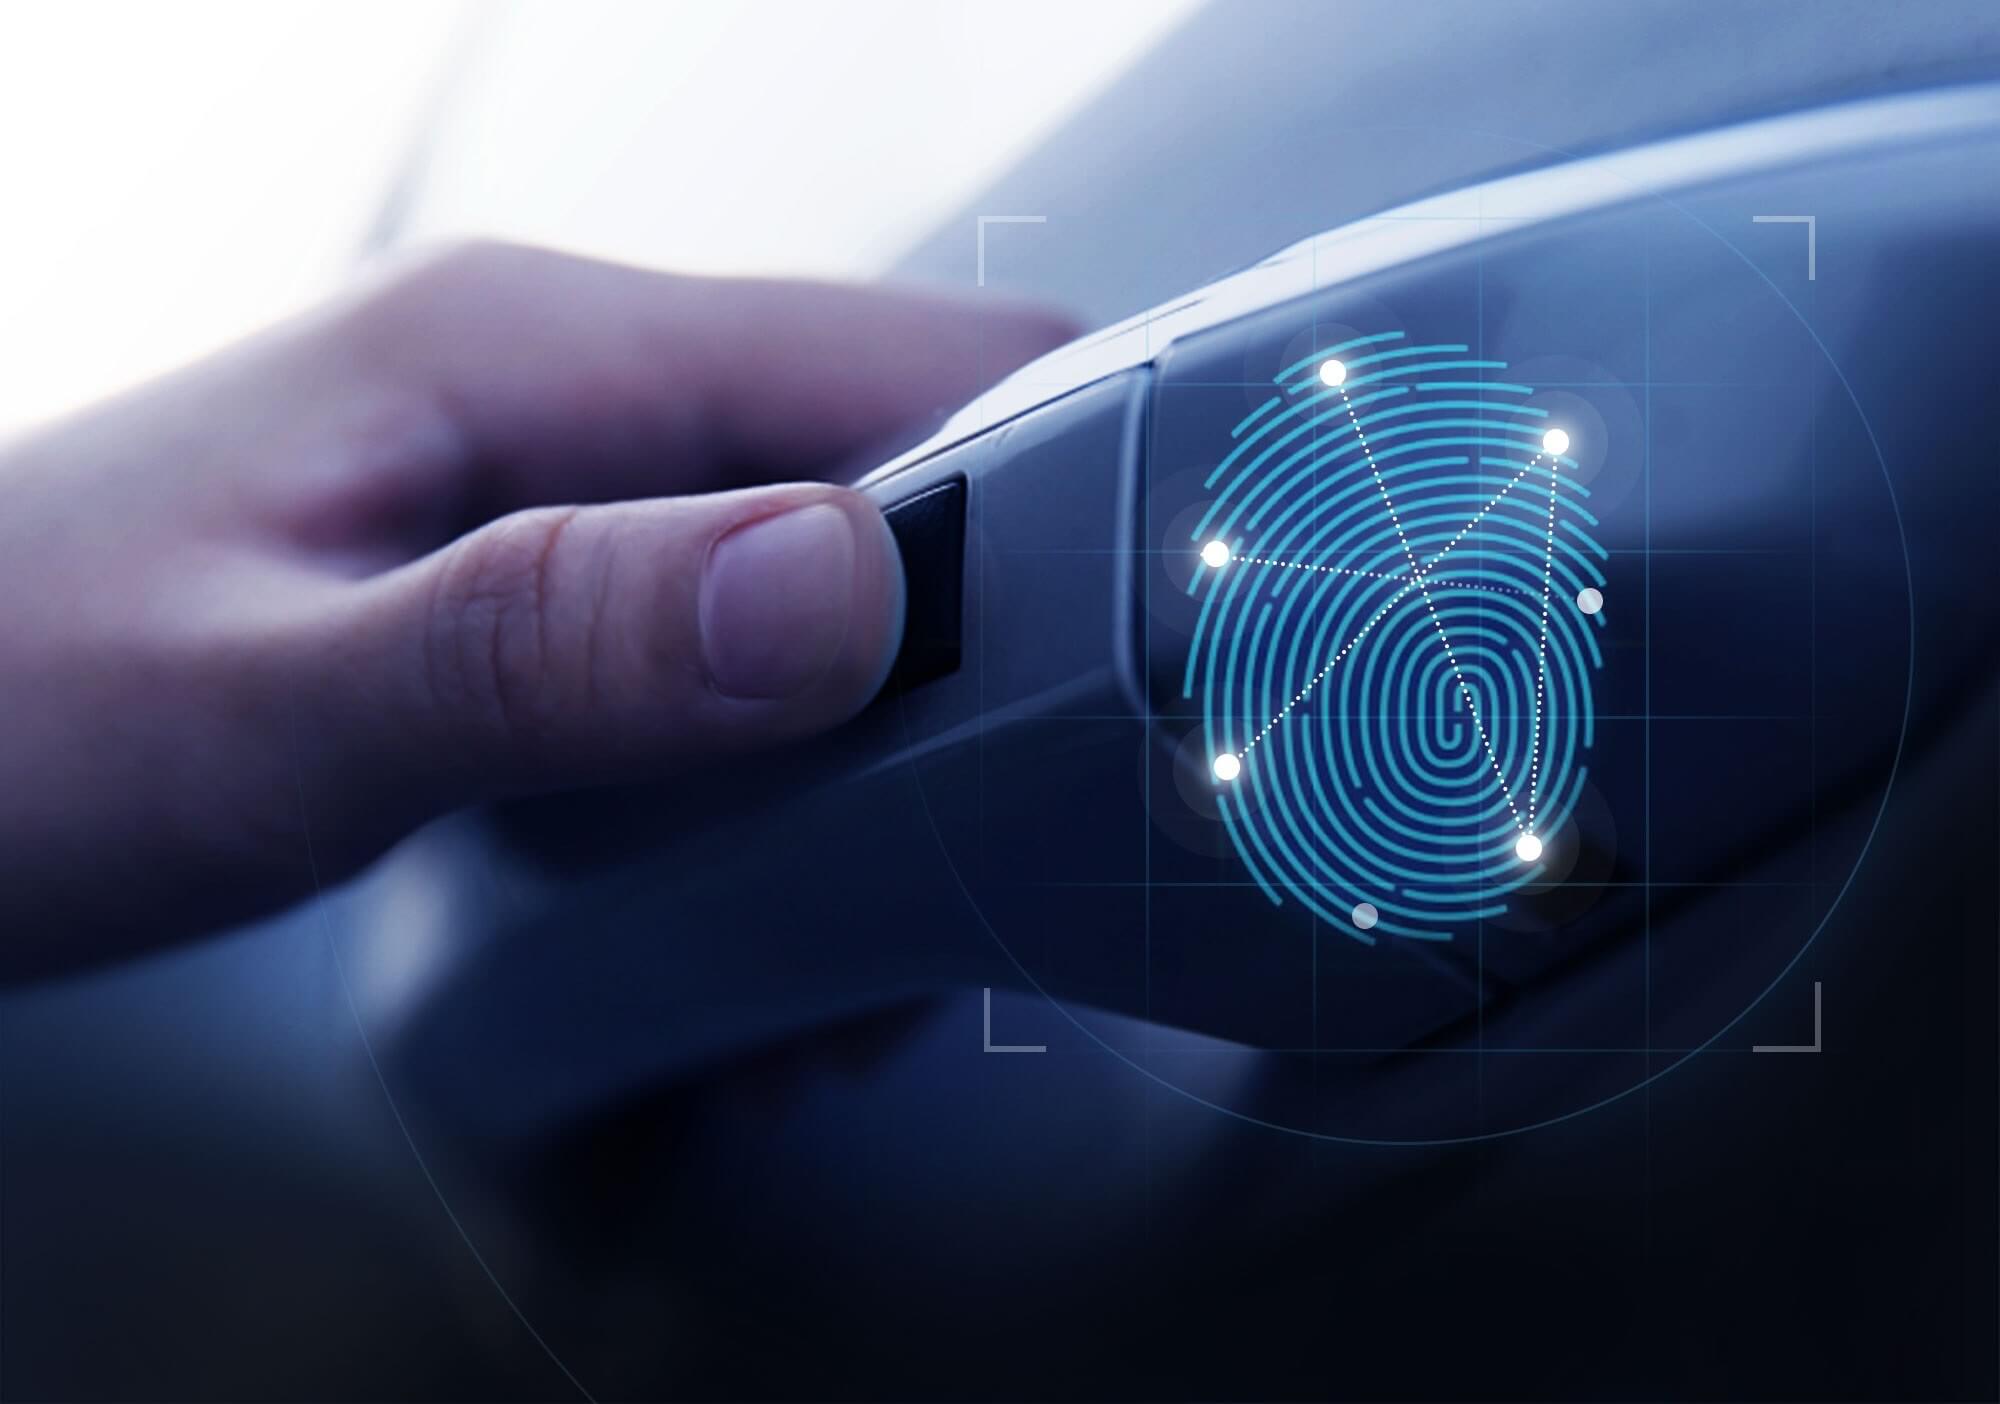 hyundai-fingerprint-unlock-car